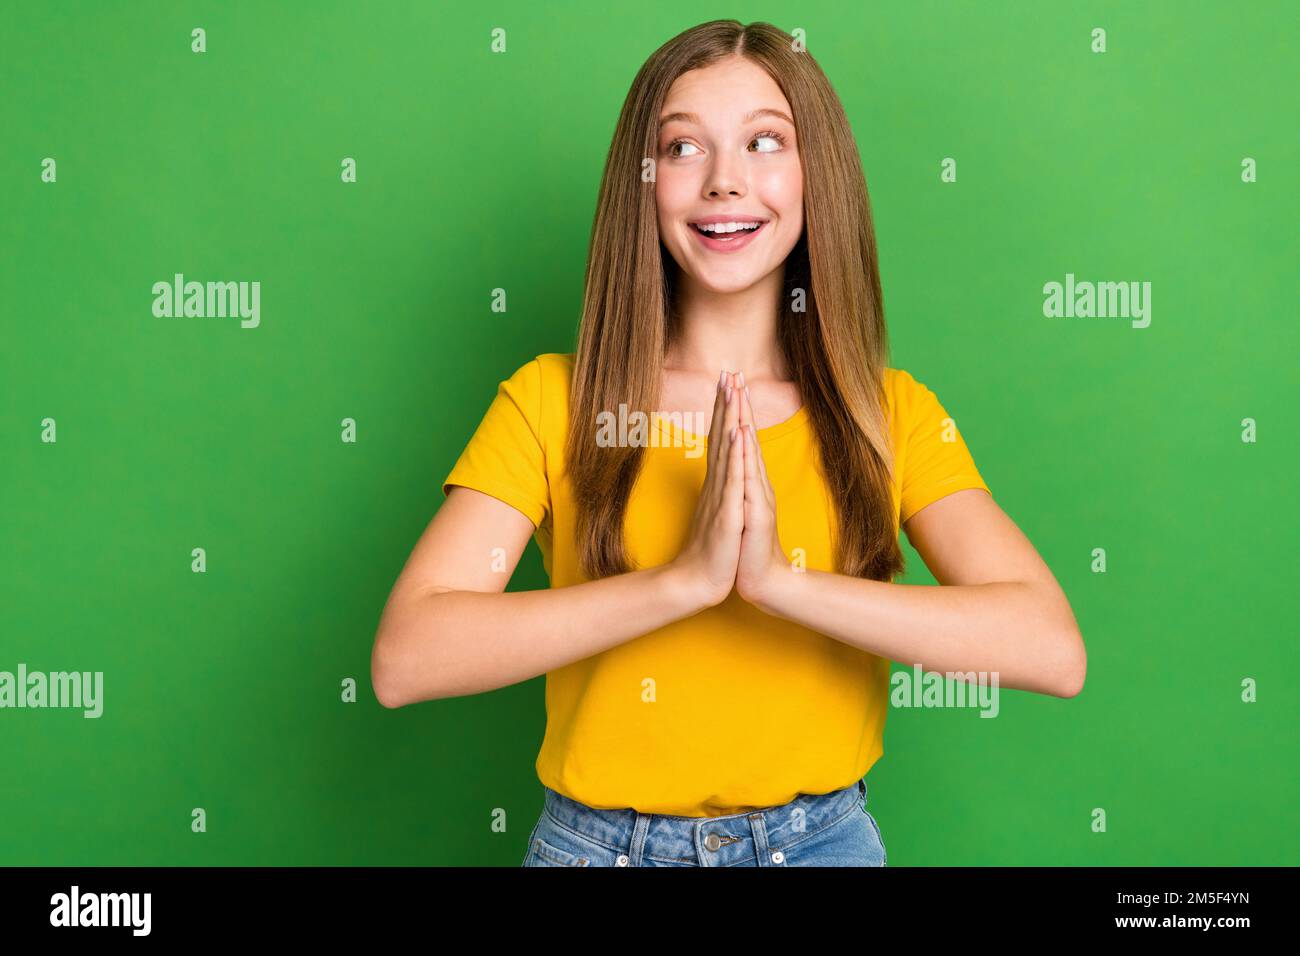 Foto eines positiven, netten Mädchens, ein Lächeln, Hände, die auf den grünen Hintergrund zeigen, wie ein leerer Raum aussieht Stockfoto